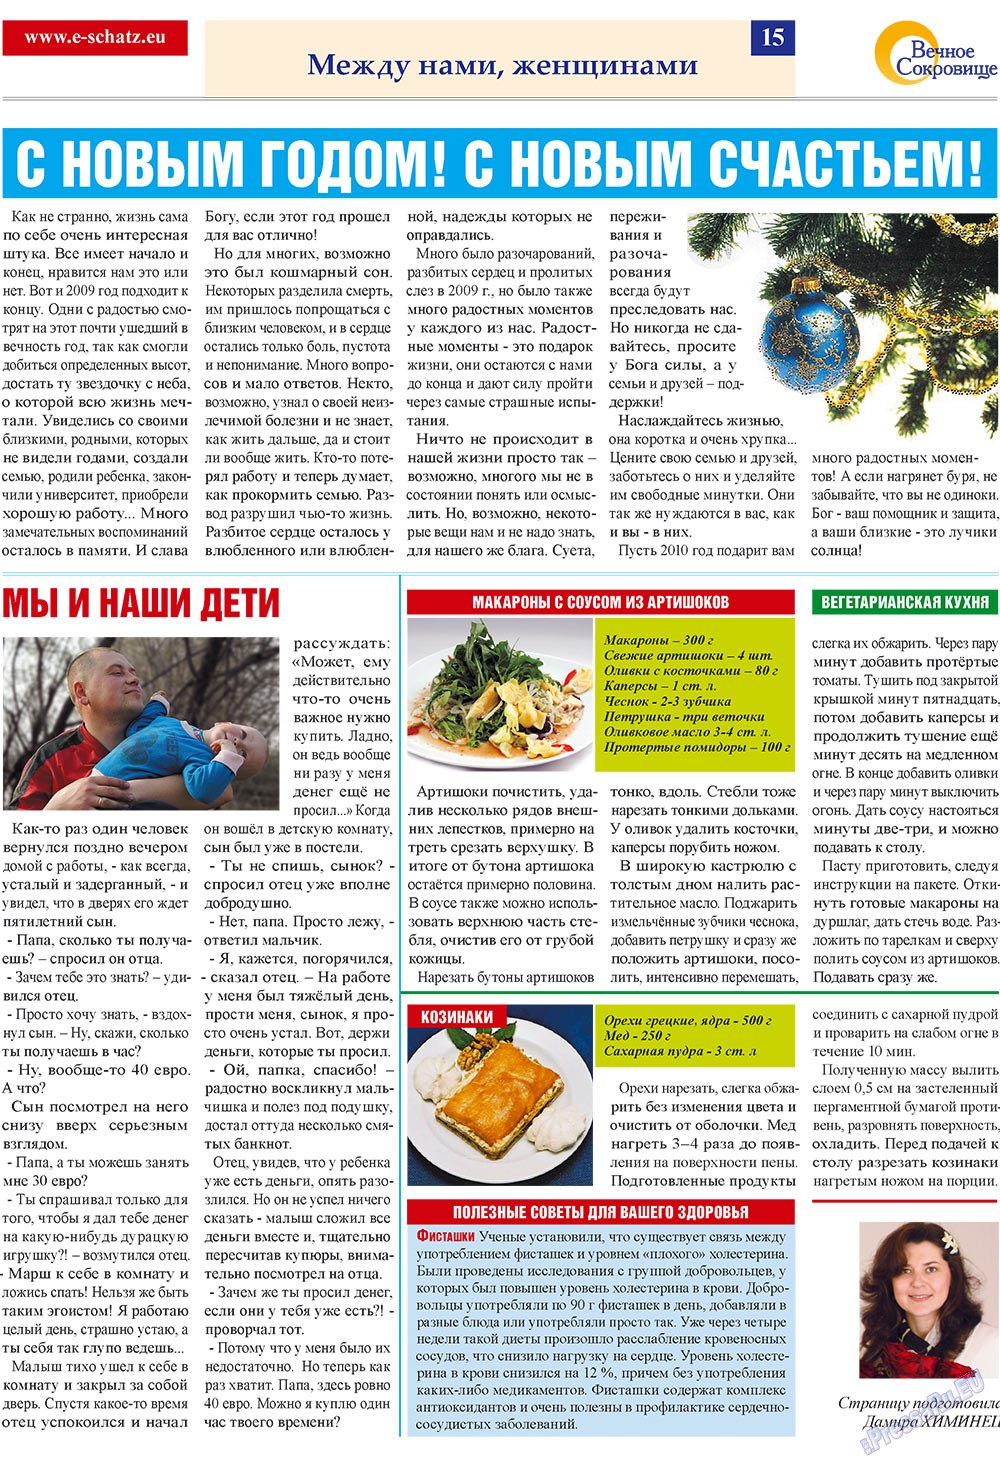 Вечное сокровище (газета). 2009 год, номер 4, стр. 15